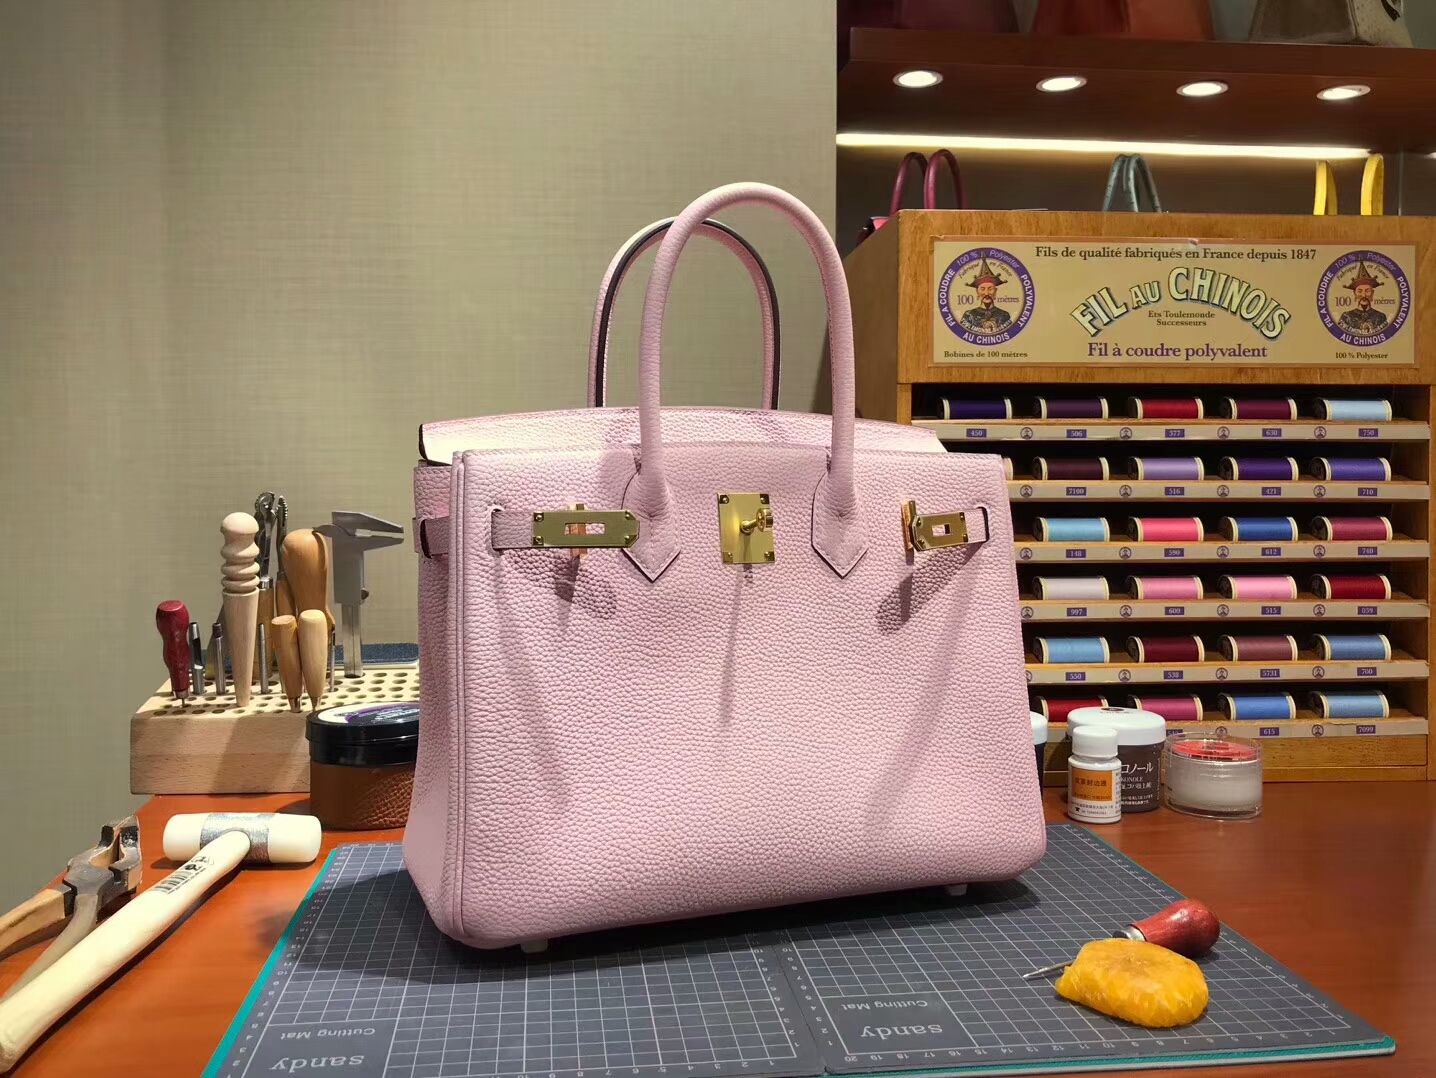 爱马仕 HERMES 铂金包 Birkin 30cm 配全套专柜原版包装 全球发售 3Q 水粉色 rose sakura